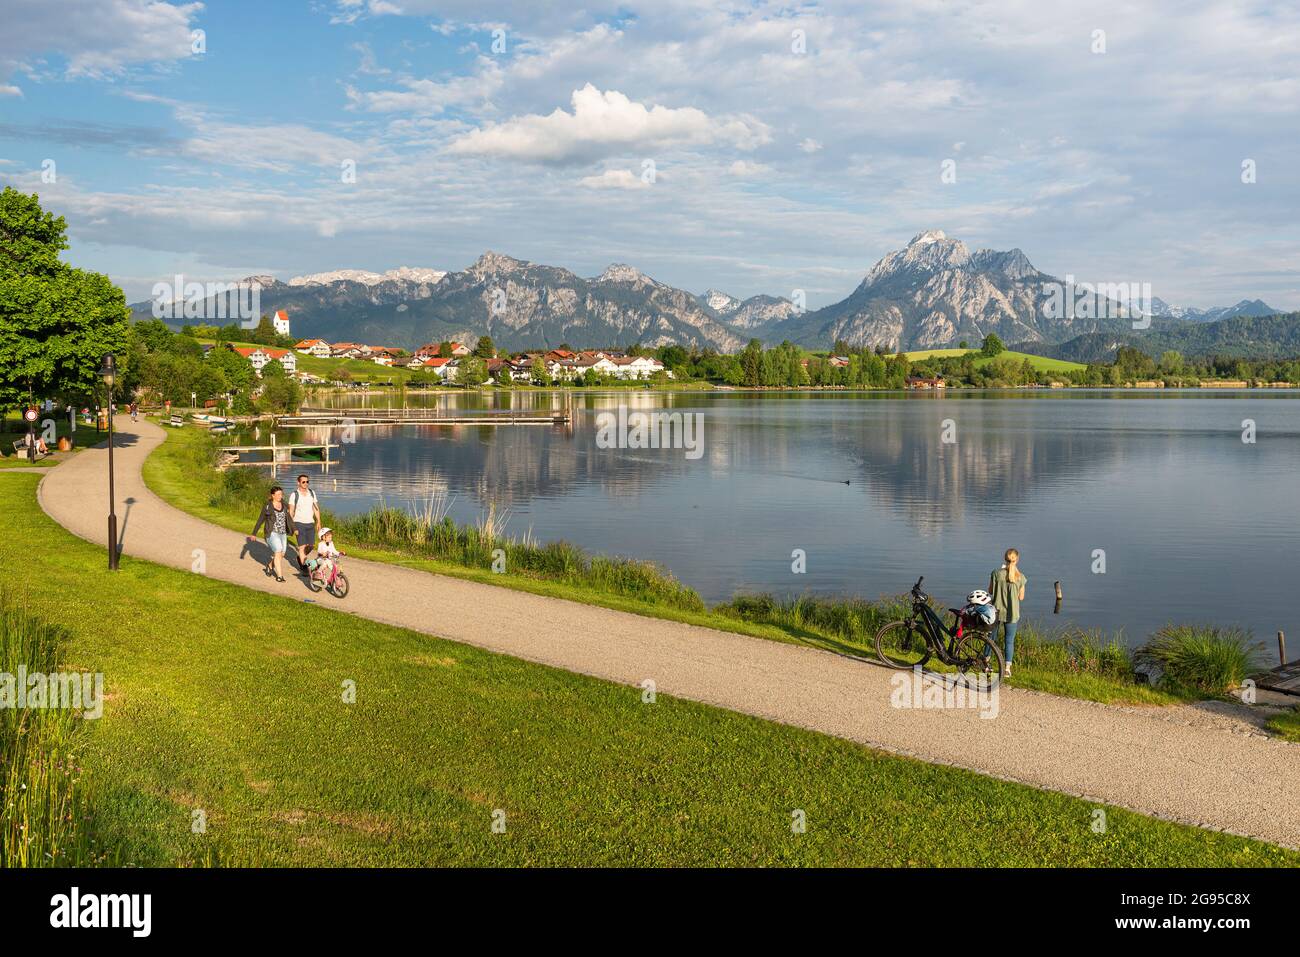 La gente cammina sulla riva del lago Hopfen di fronte alle montagne delle Alpi Ammergau al sole del pomeriggio, Allgäu, Baviera, Germania Foto Stock